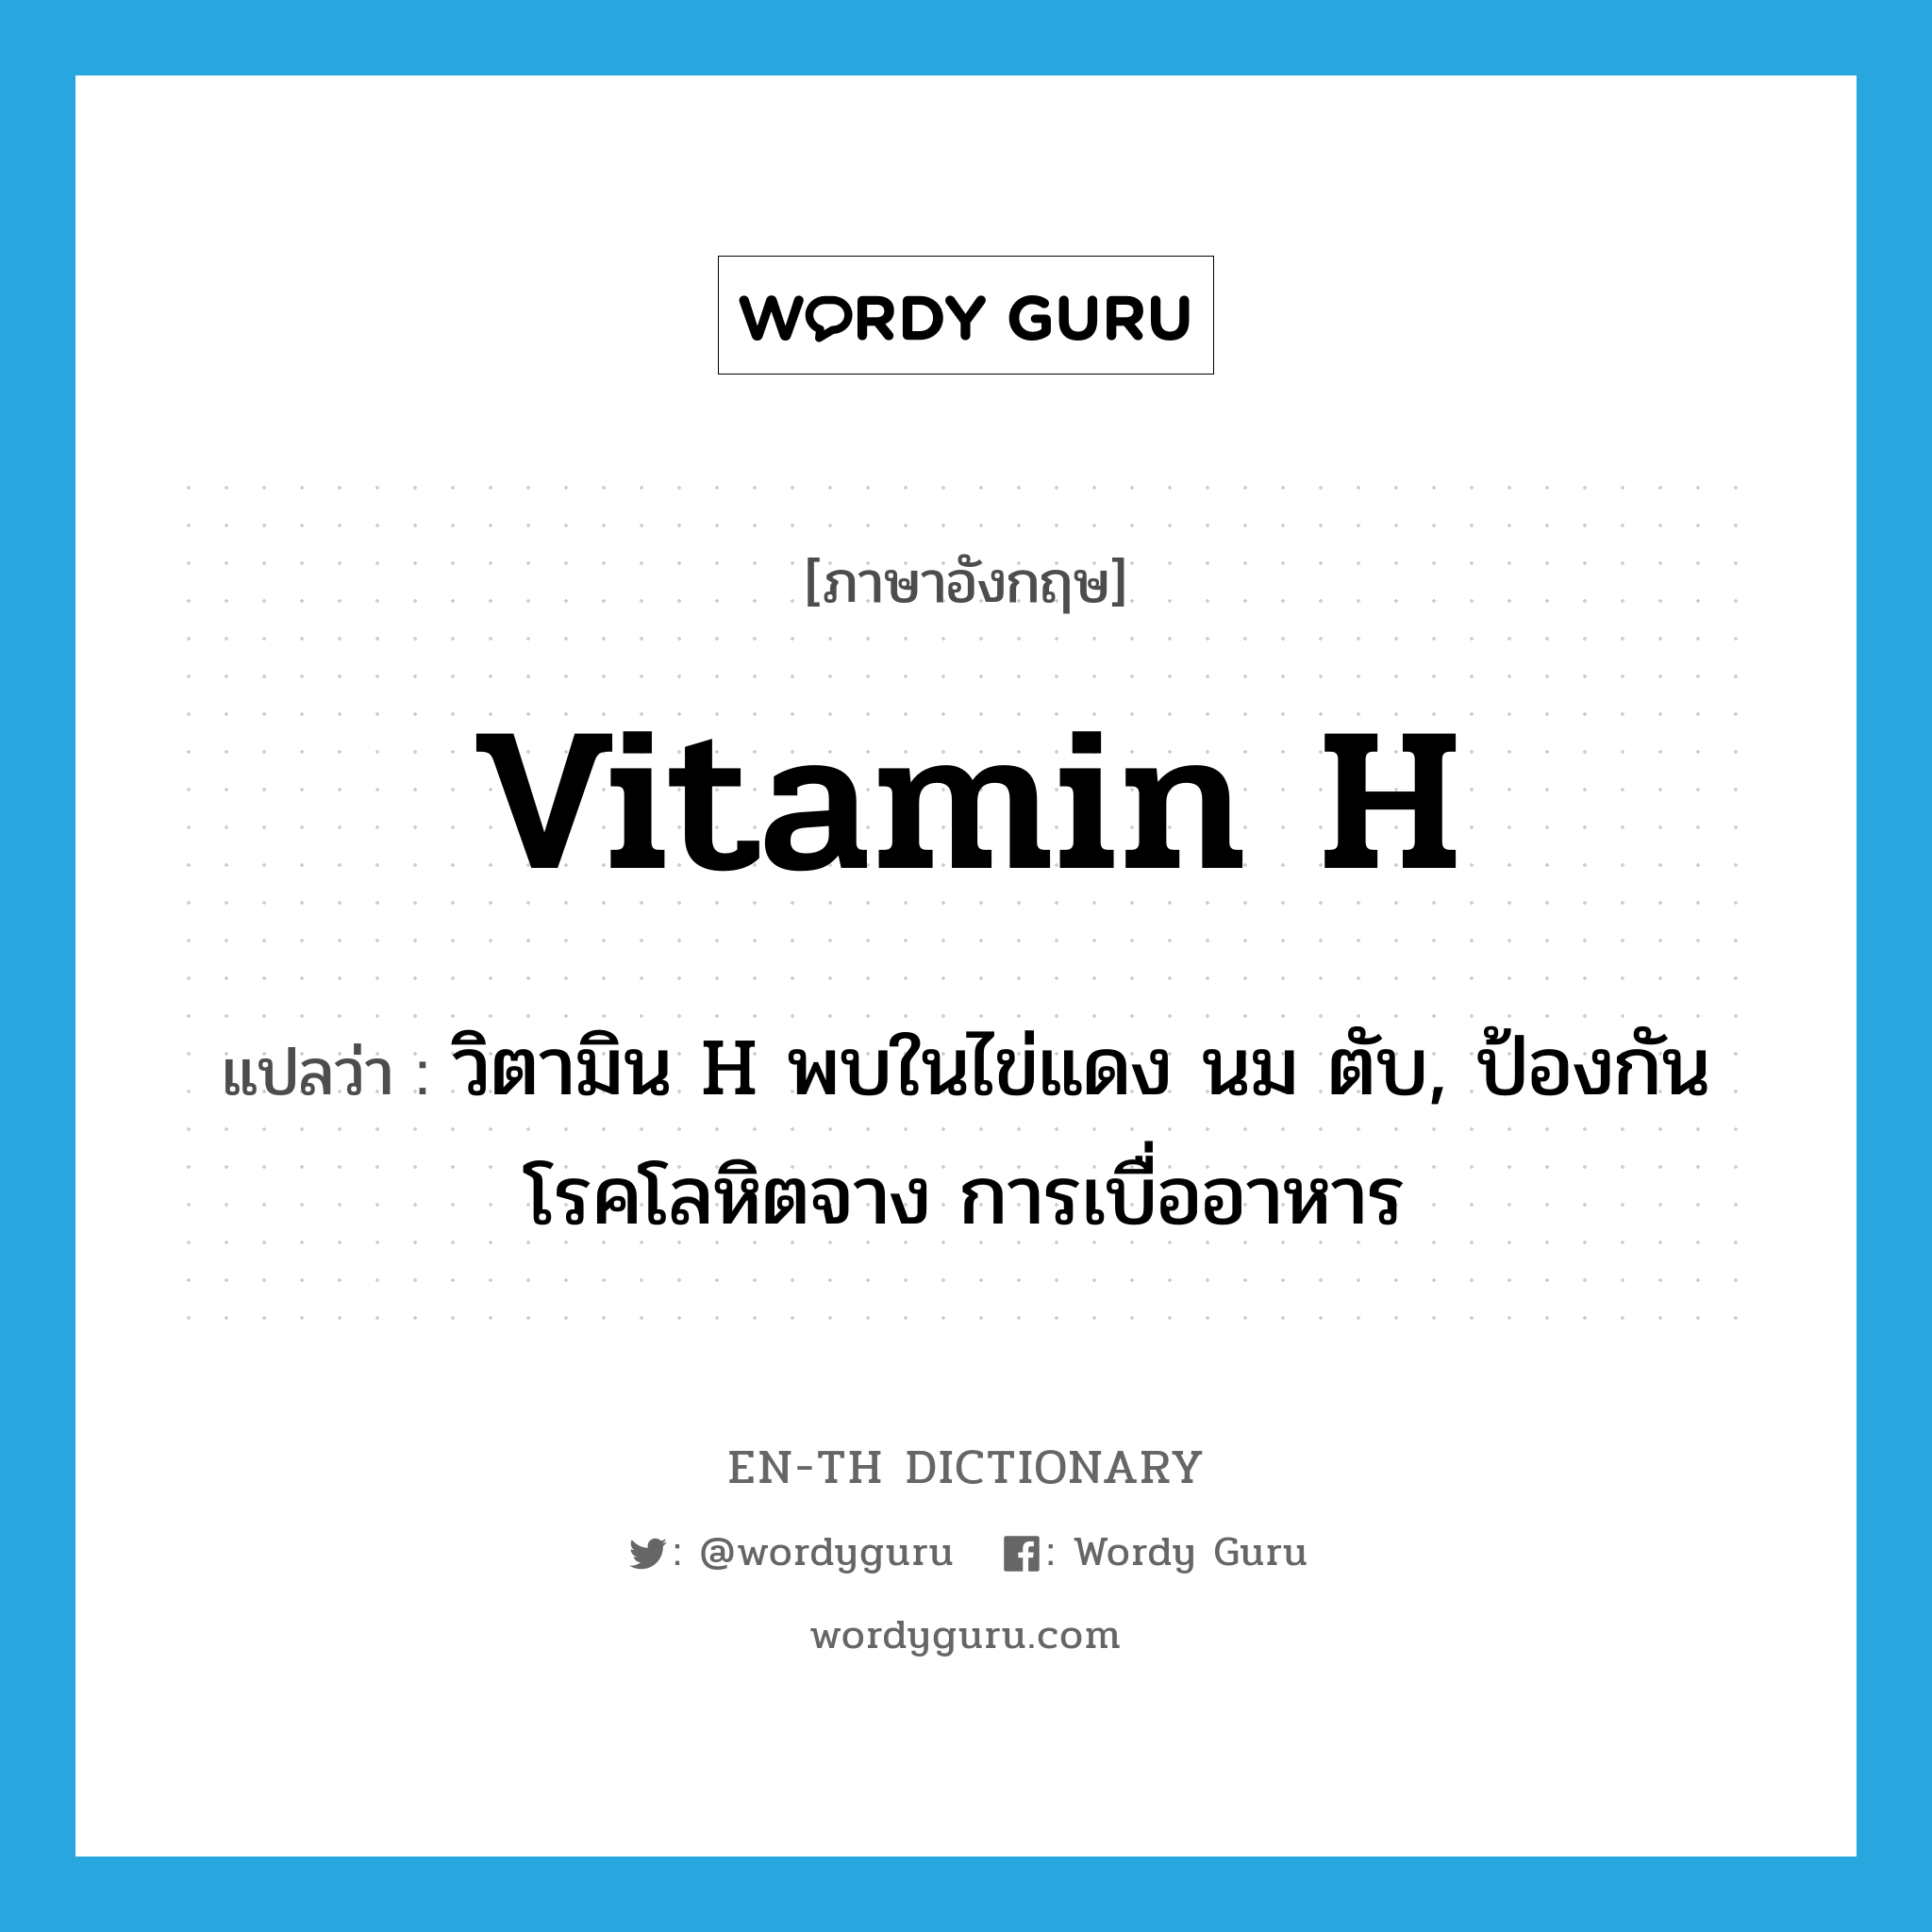 vitamin H แปลว่า?, คำศัพท์ภาษาอังกฤษ vitamin H แปลว่า วิตามิน H พบในไข่แดง นม ตับ, ป้องกันโรคโลหิตจาง การเบื่ออาหาร ประเภท N หมวด N